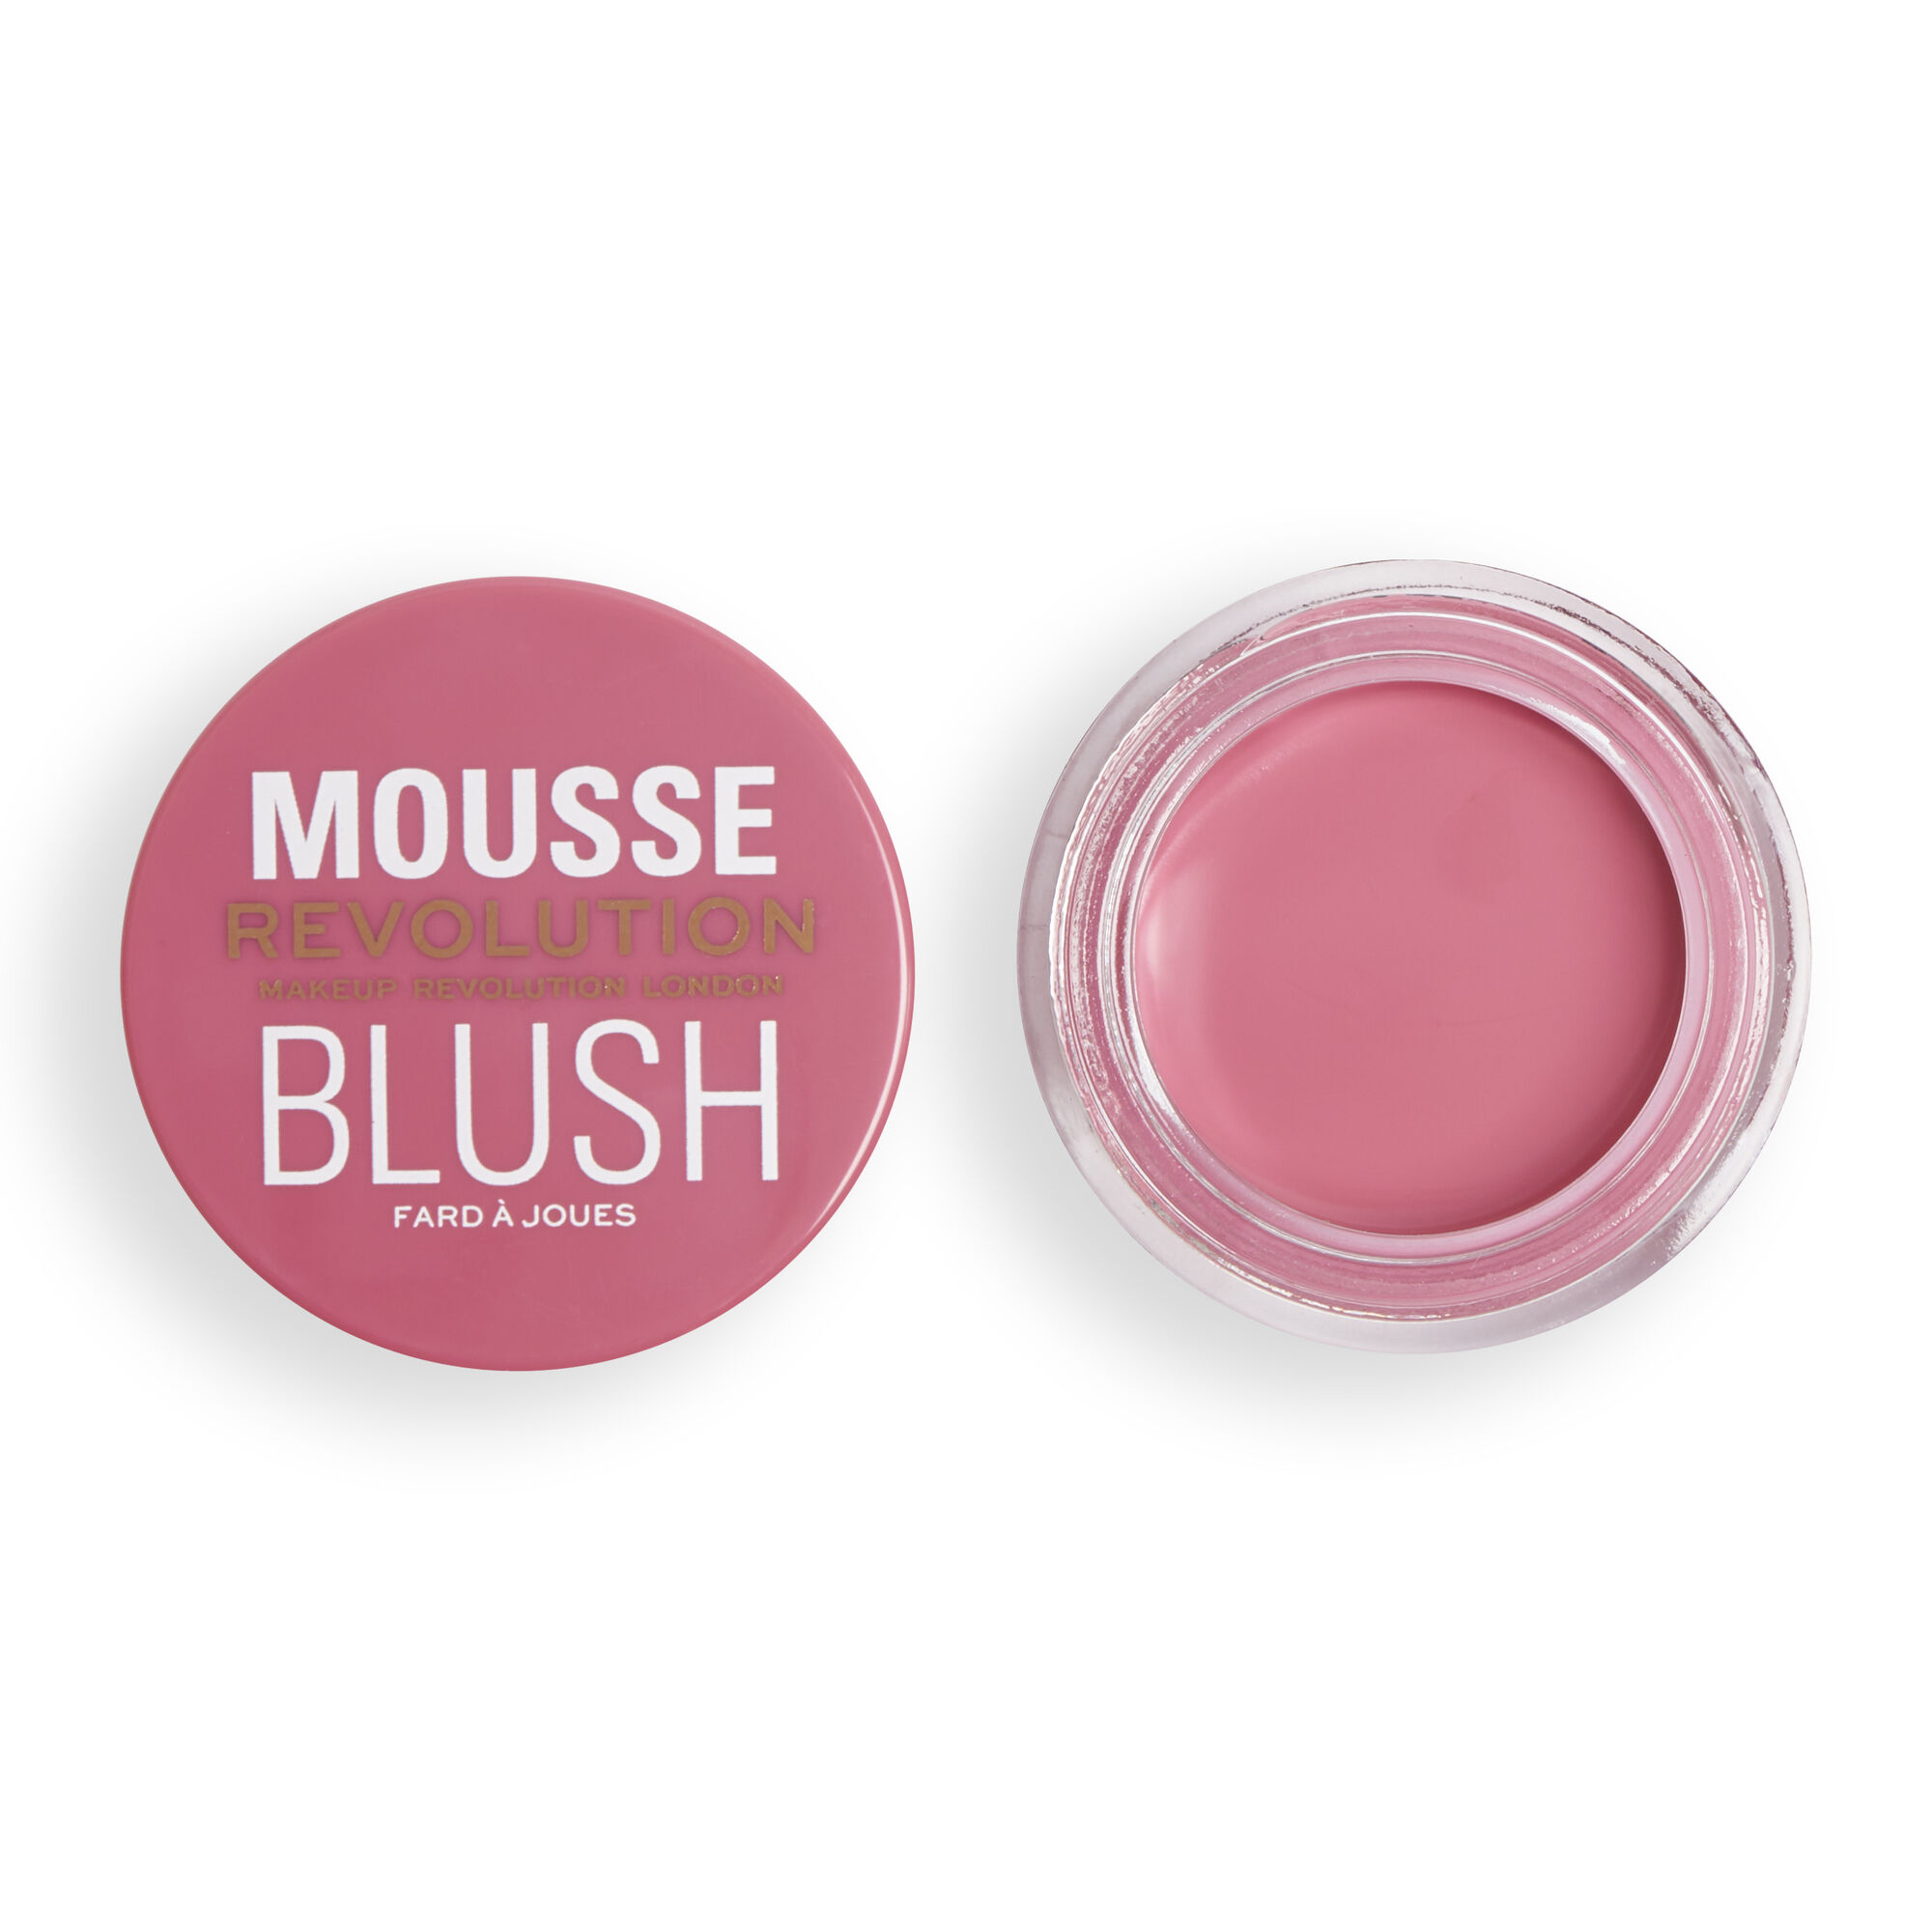 Румяна кремовые Revolution Makeup Mousse Blush Blossom Rose Pink румяна для лица pastel cream blush blendable кремовые 44 blossom 3 6 г